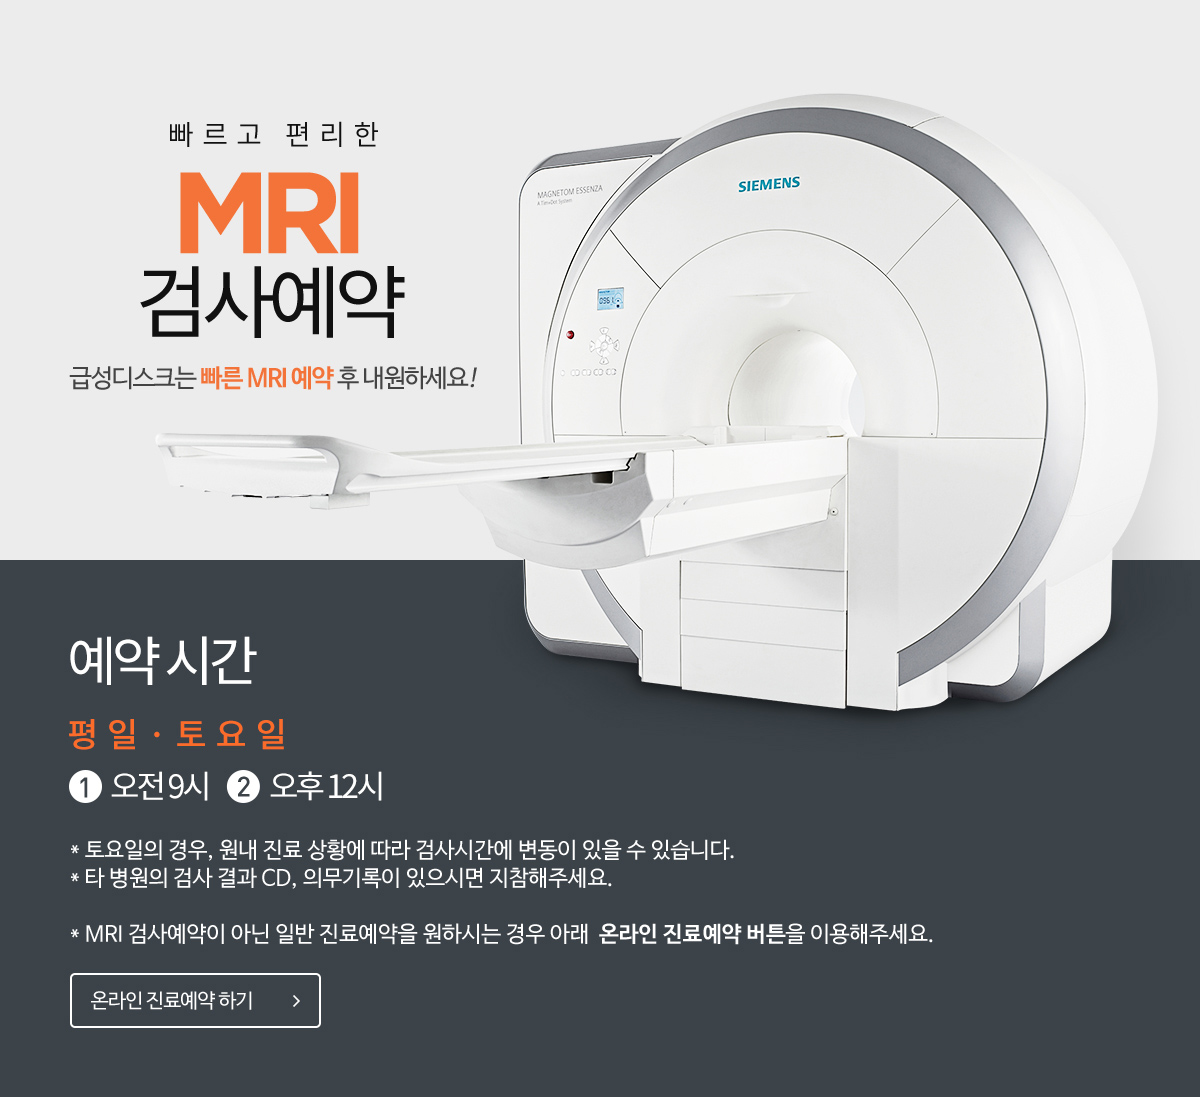 빠르고 편리한 MRI 검사예약 / MRI 예약시간 평일 1.오전9시 2.오후12시, 3.오후17시/ 토요일 1.오전9시 / MRI 검사예약이 아닌 일반 진료예약을 원하시는 경우 아래  온라인 진료예약 버튼을 이용해주세요. 온라인진료예약하기 바로가기